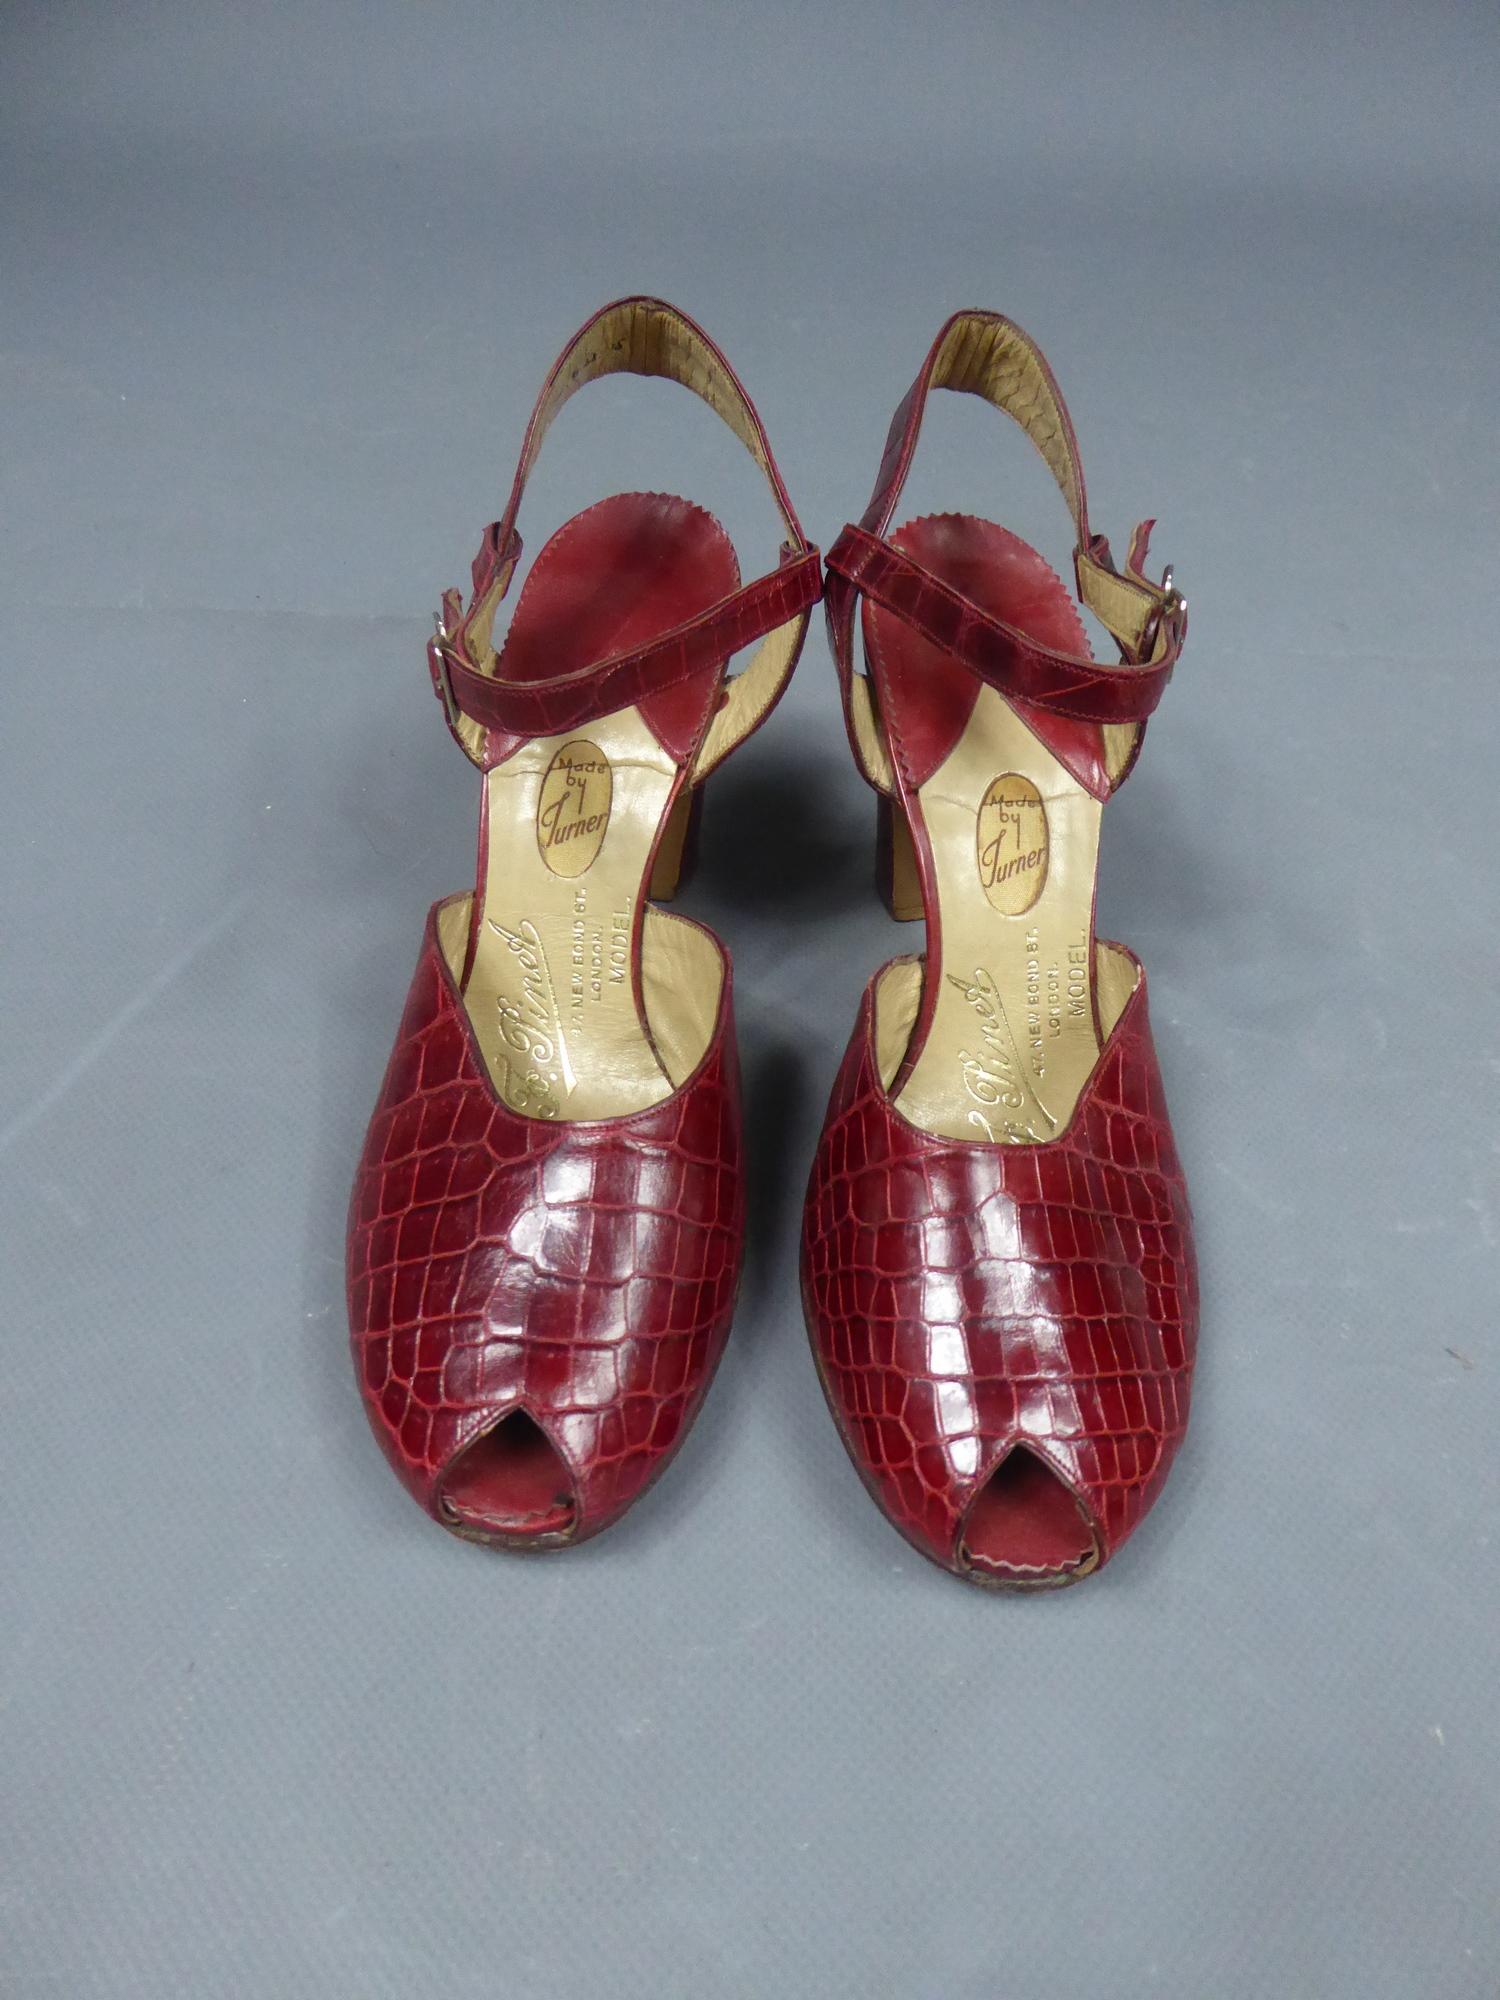 francois pinet shoes